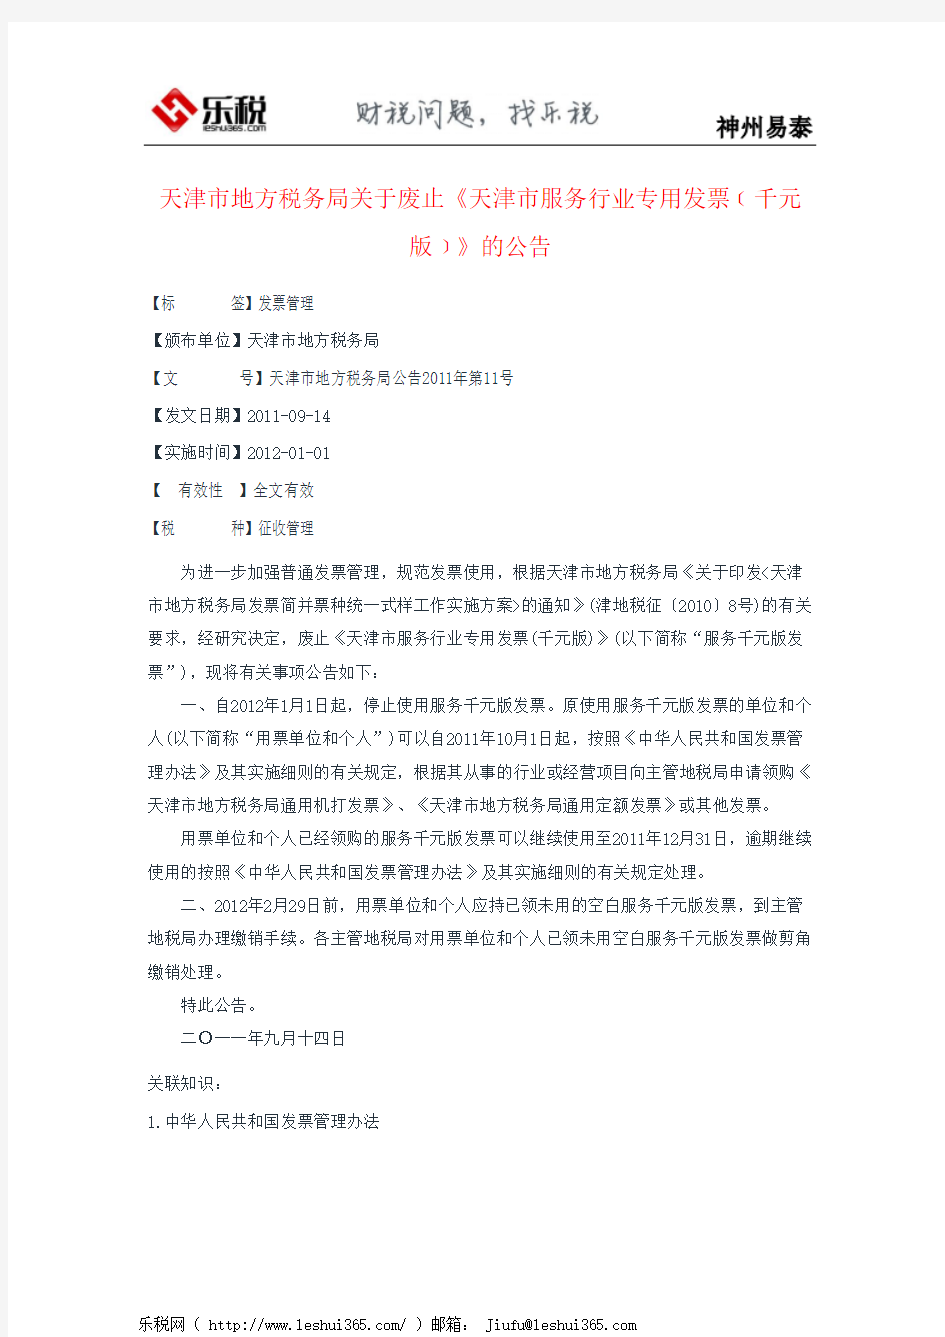 天津市地方税务局关于废止《天津市服务行业专用发票﹝千元版﹞》的公告